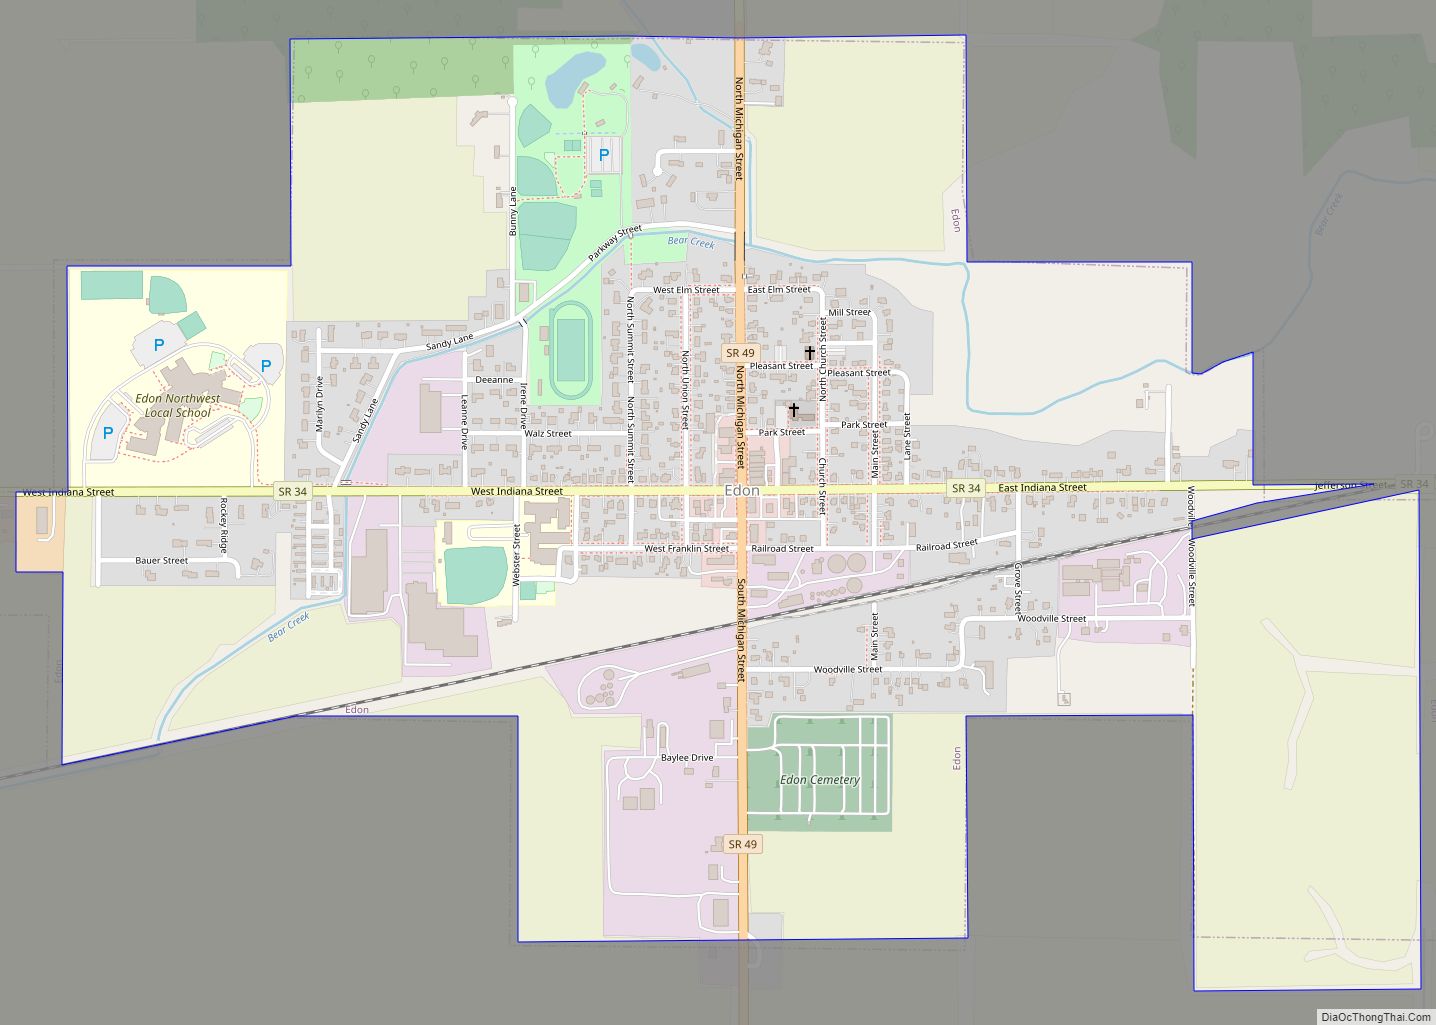 Map of Edon village